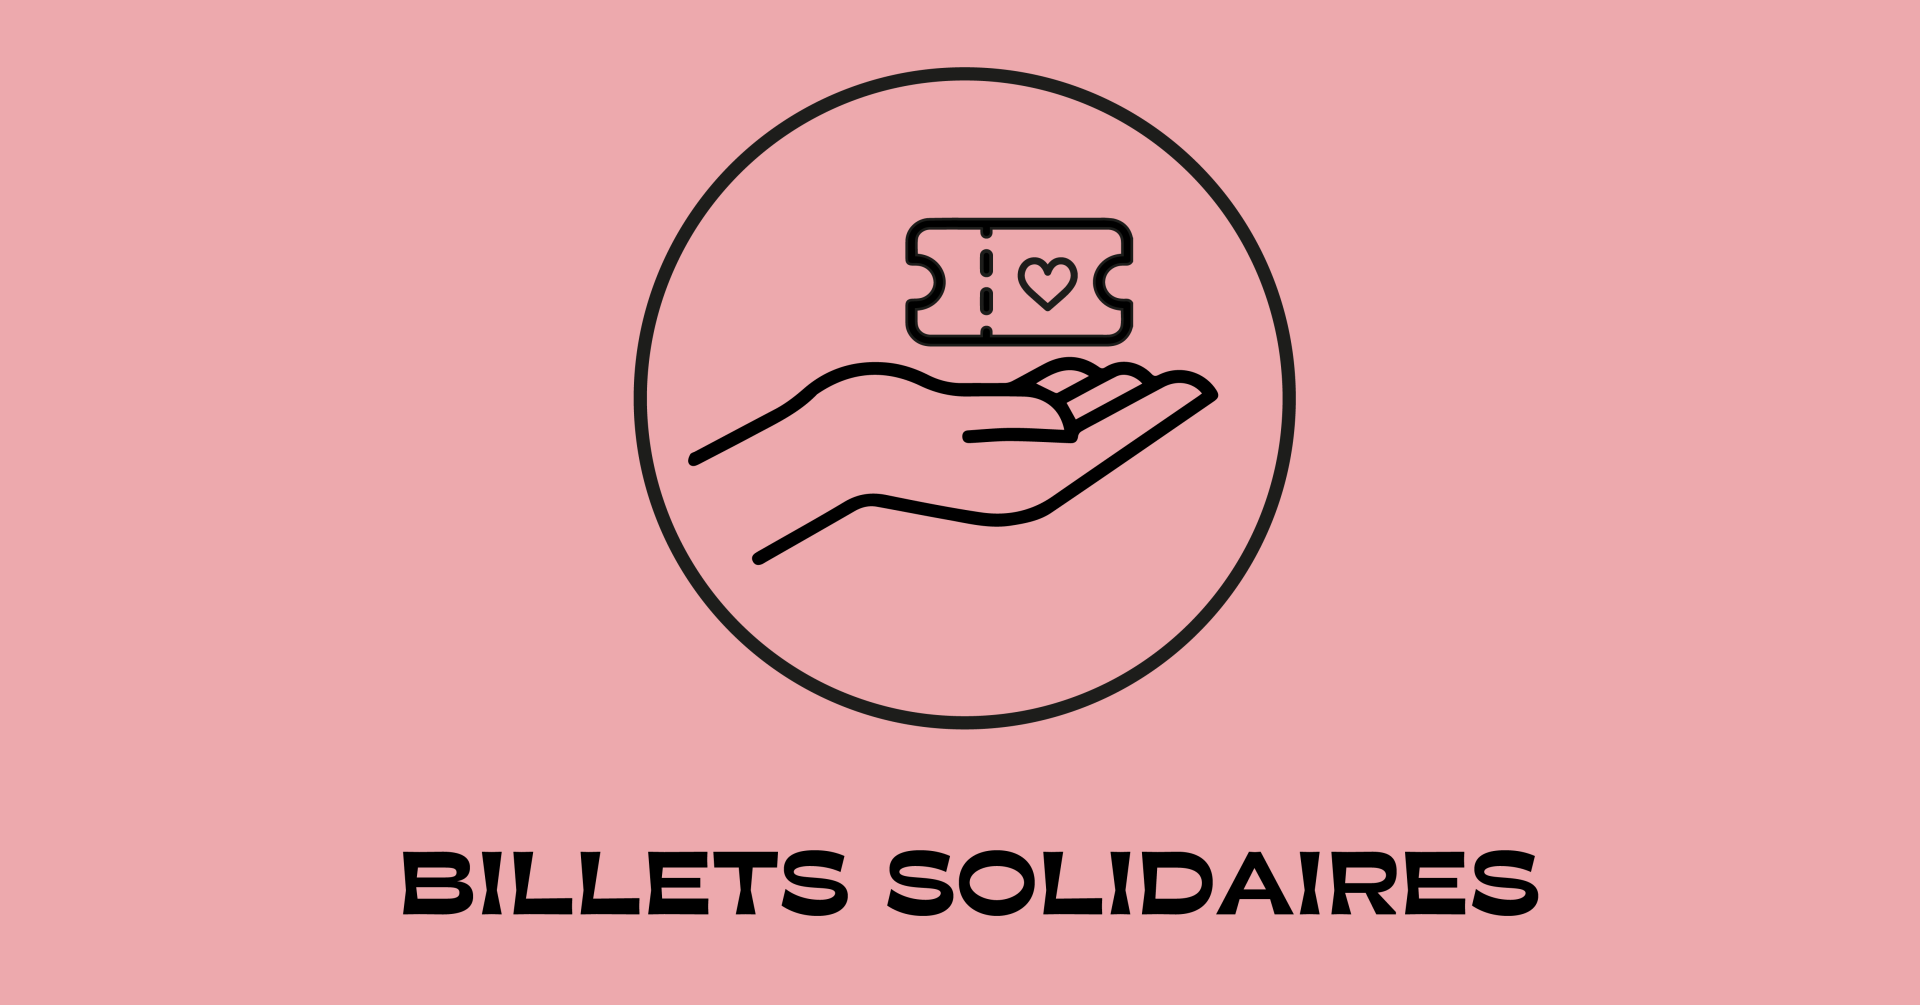 visu_billets_solidaires_eventfb_fup.png